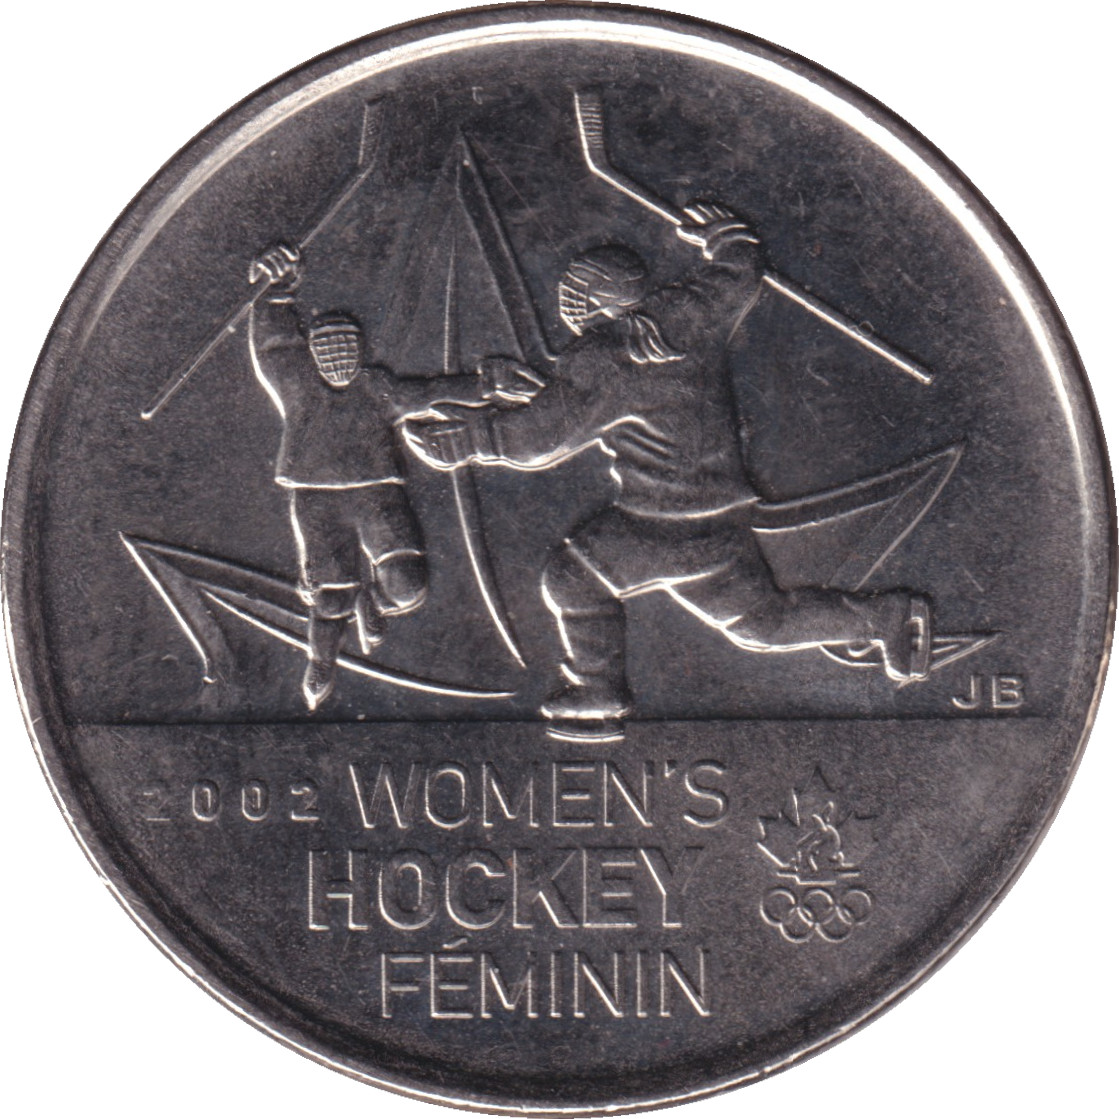 25 cents - Hockey feminin